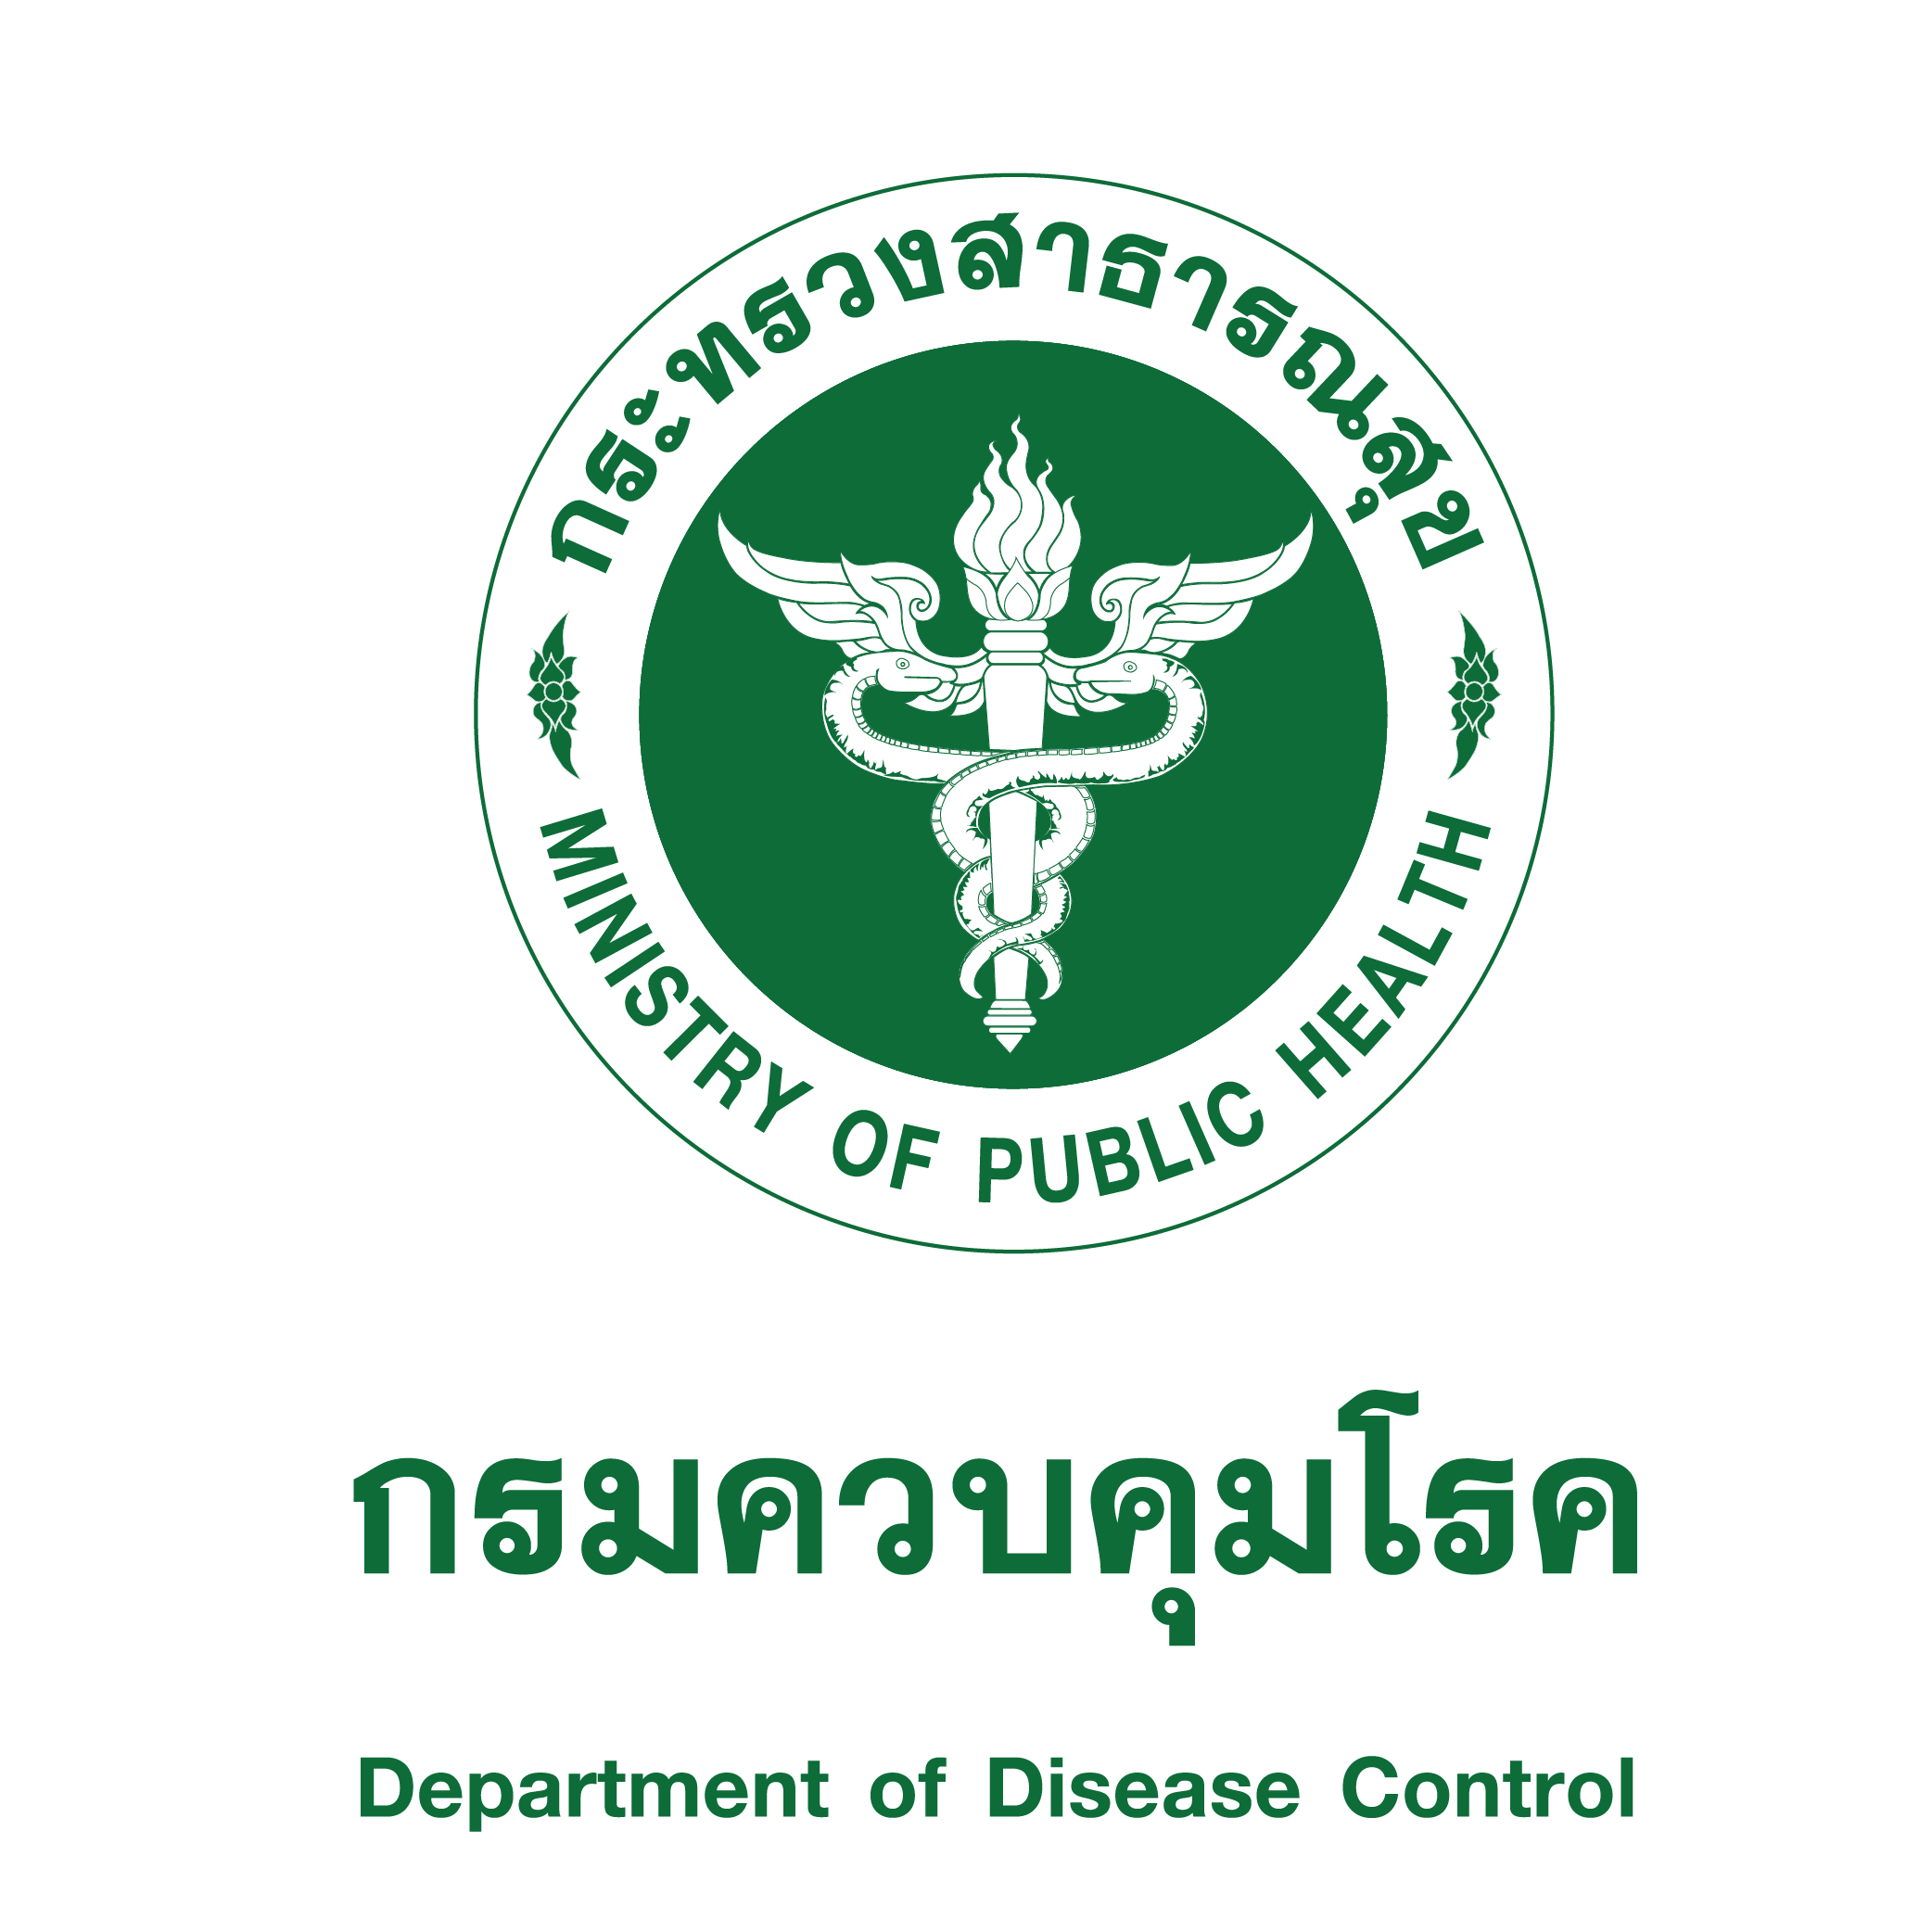  กลุ่มพัฒนาระบบบริหารองค์กร ขอประชาสัมพันธ์งานประชุมใหญ่สามัญประจำปี พ.ศ. 2566 ของสมาคมนักเรียนทุนรัฐบาลไทย 